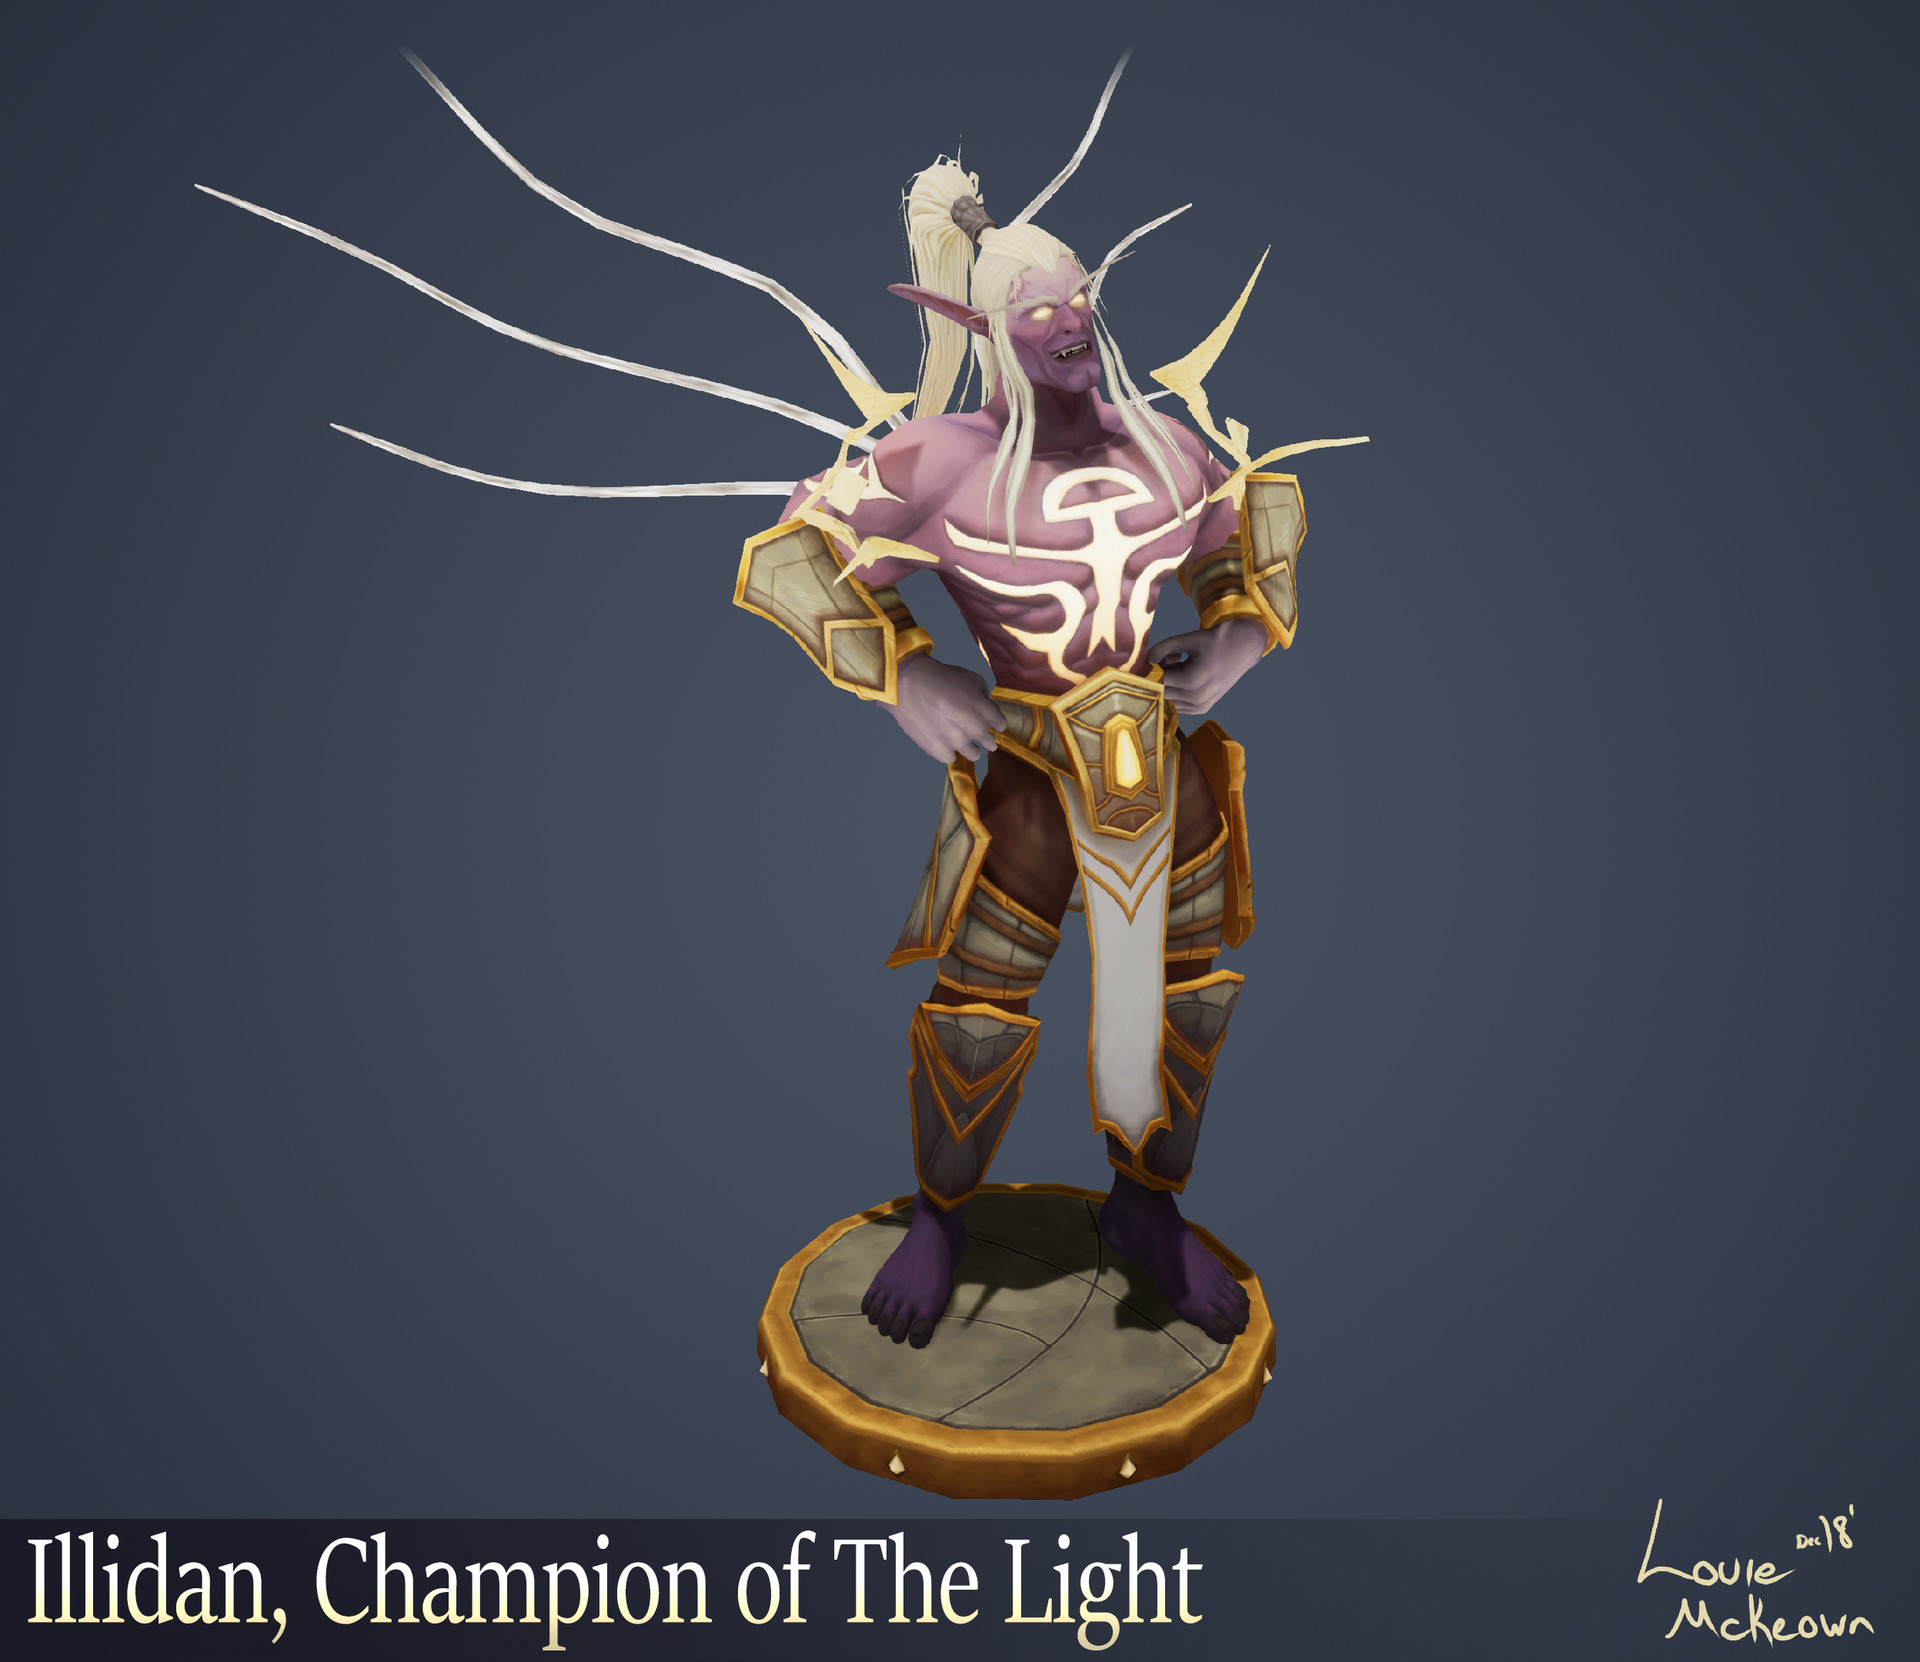 Louie McKeown - Illidan, Champion of Light